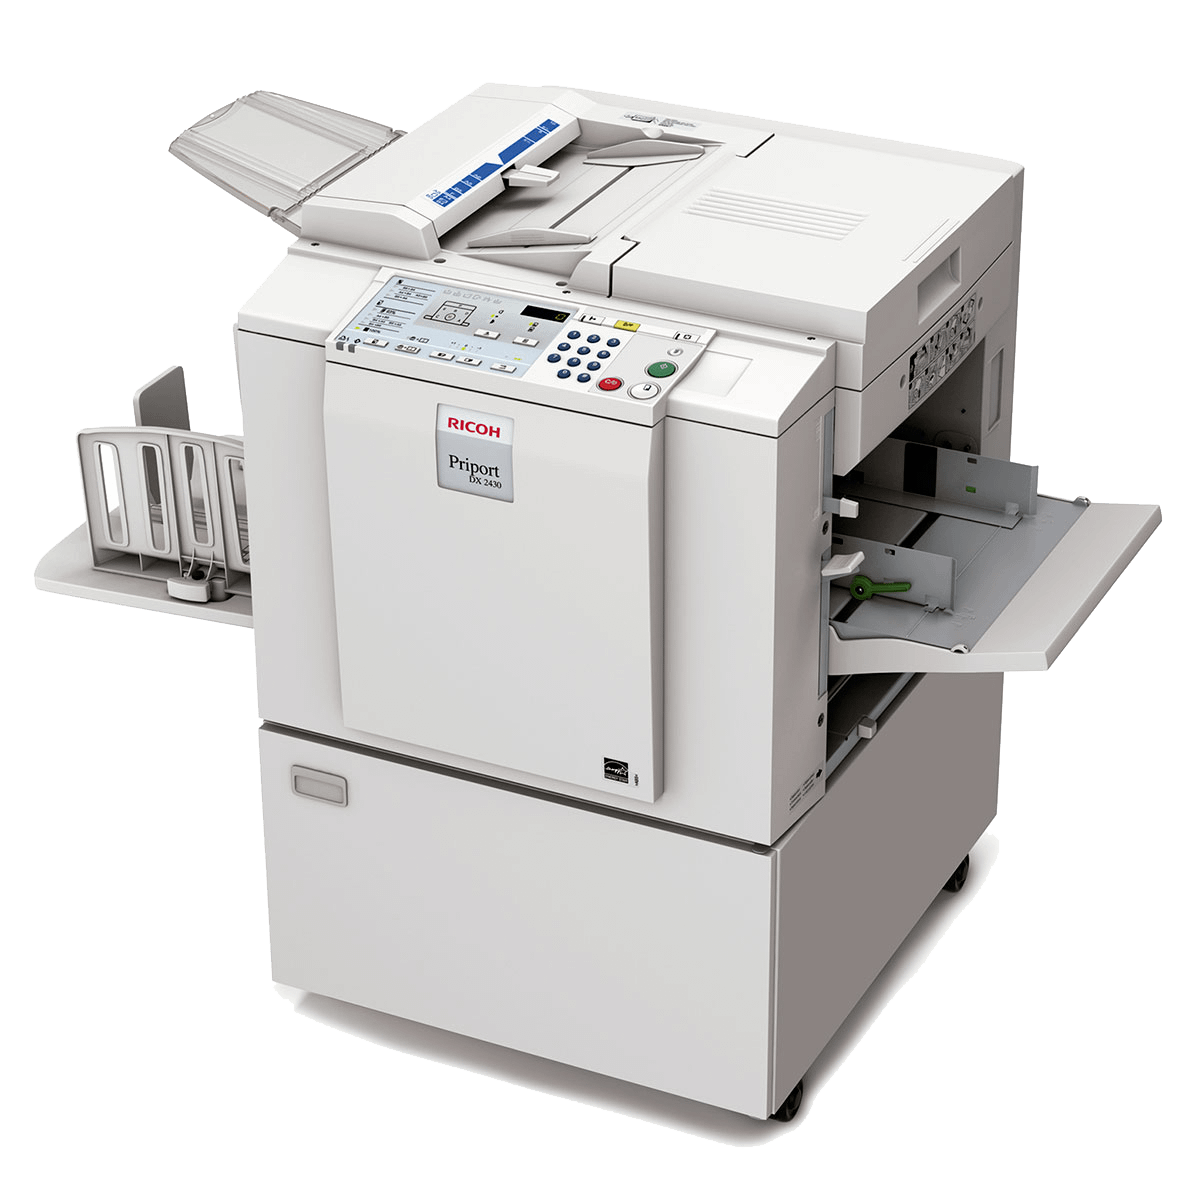 slids hensigt legemliggøre Copy Printer Ricoh Priport DX 2430 - Print Supply Outlets